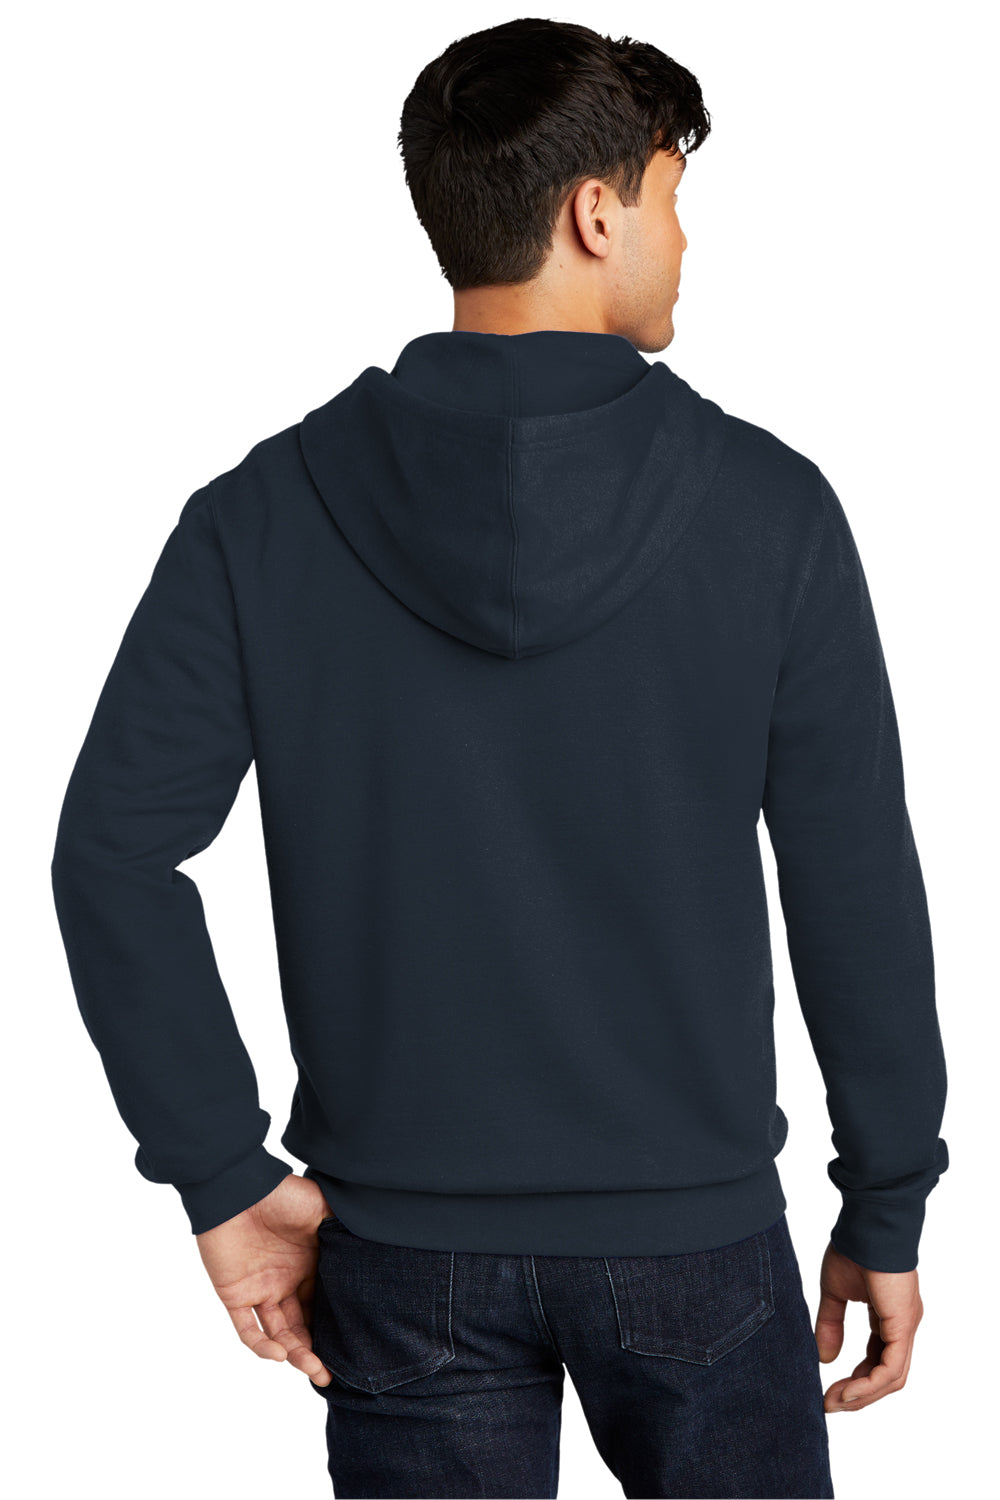 District Mens Very Important Fleece Full Zip Hooded Sweatshirt Hoodie New Navy Blue Side